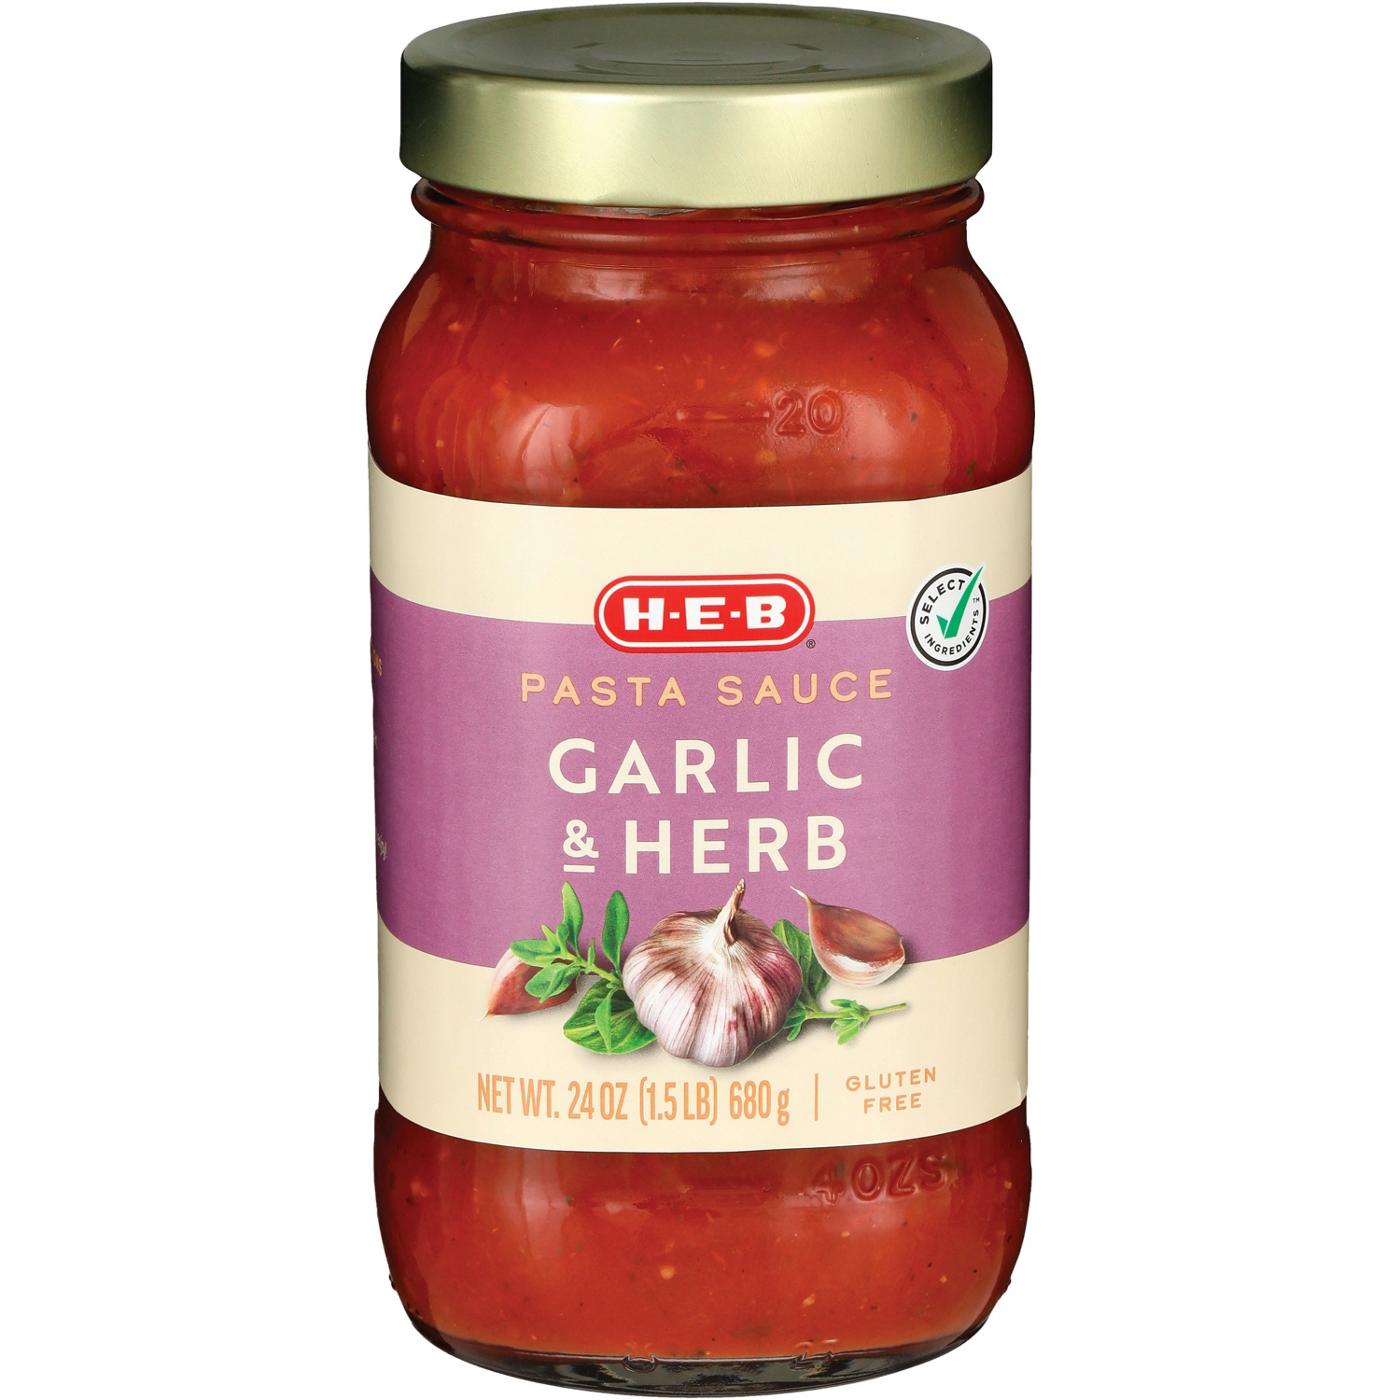 H-E-B Garlic & Herb Pasta Sauce; image 2 of 2